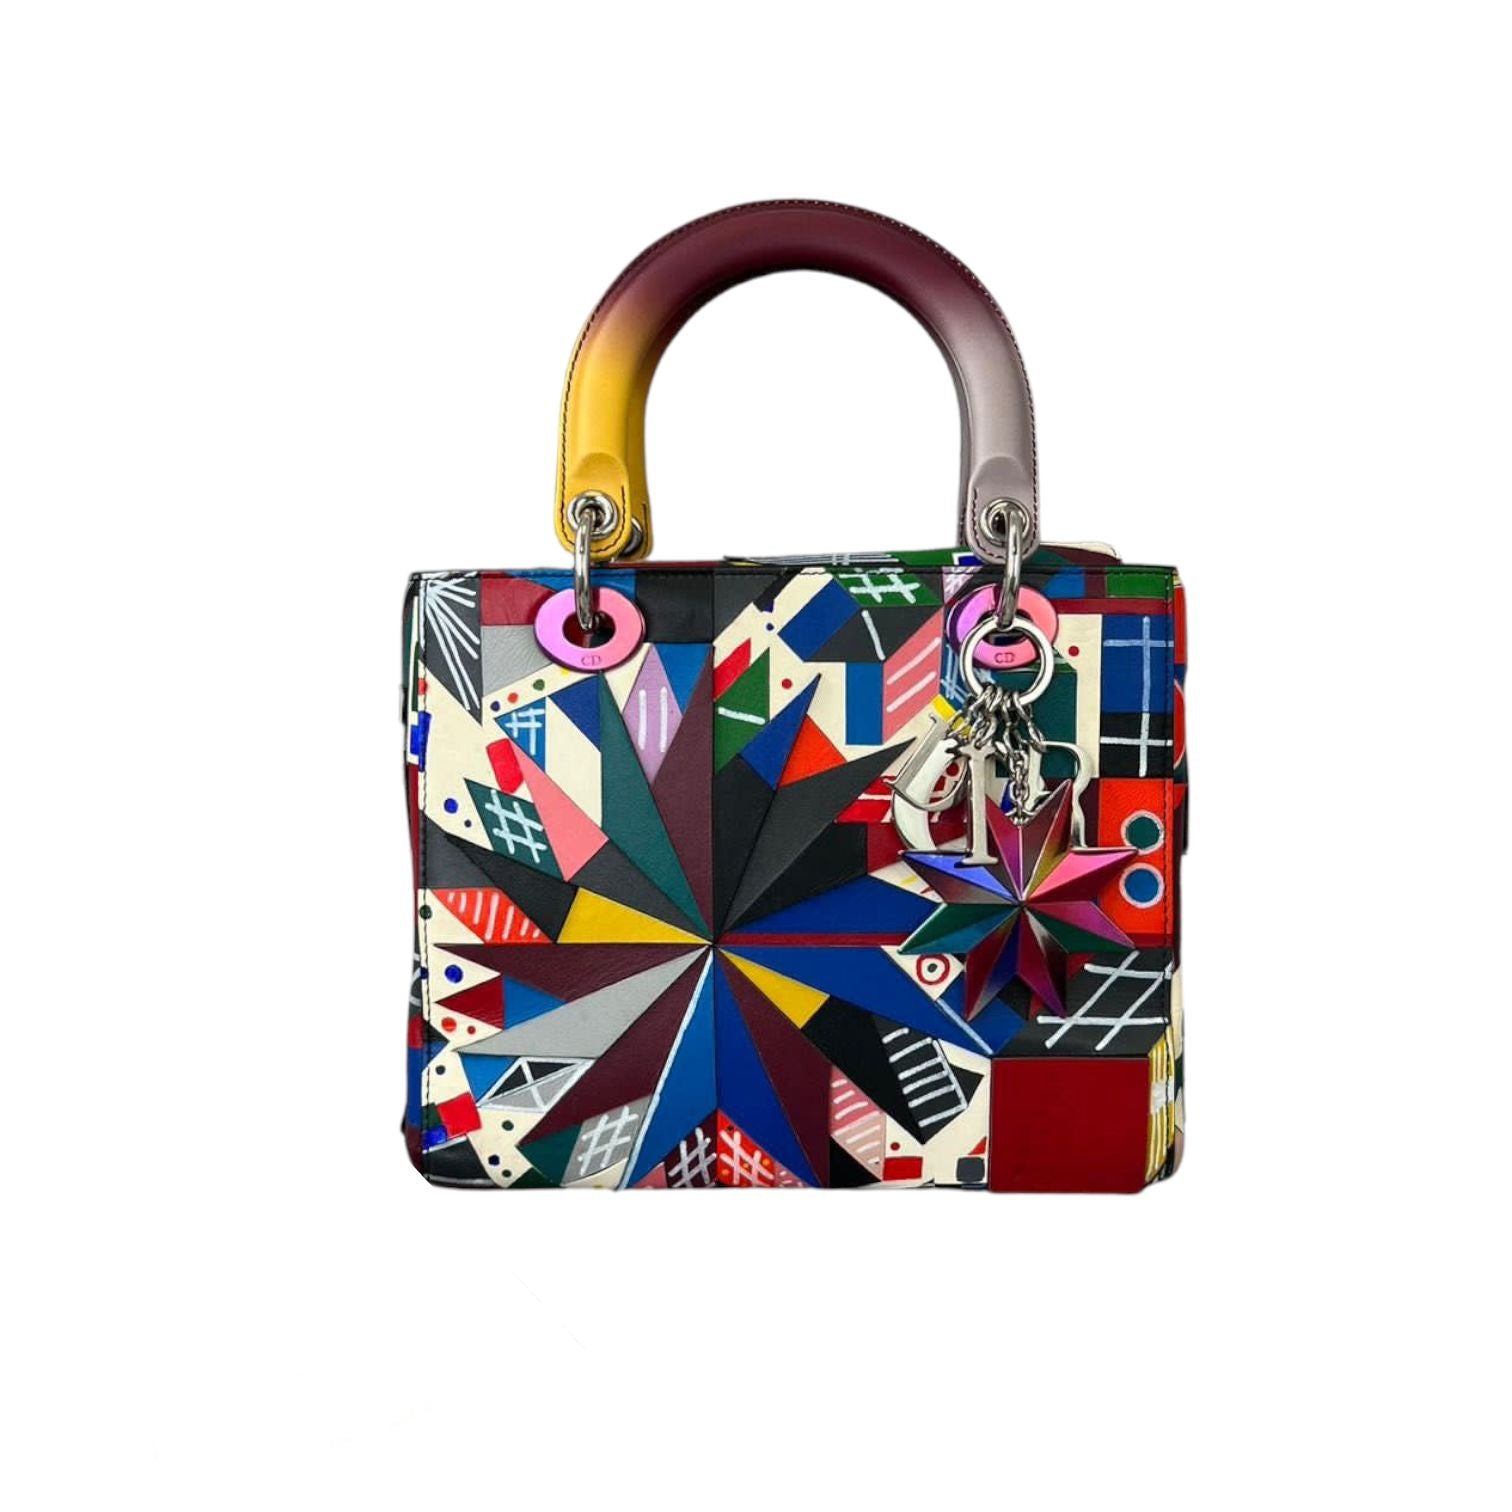 See Diors New Lady Dior Art Project Handbag Designs